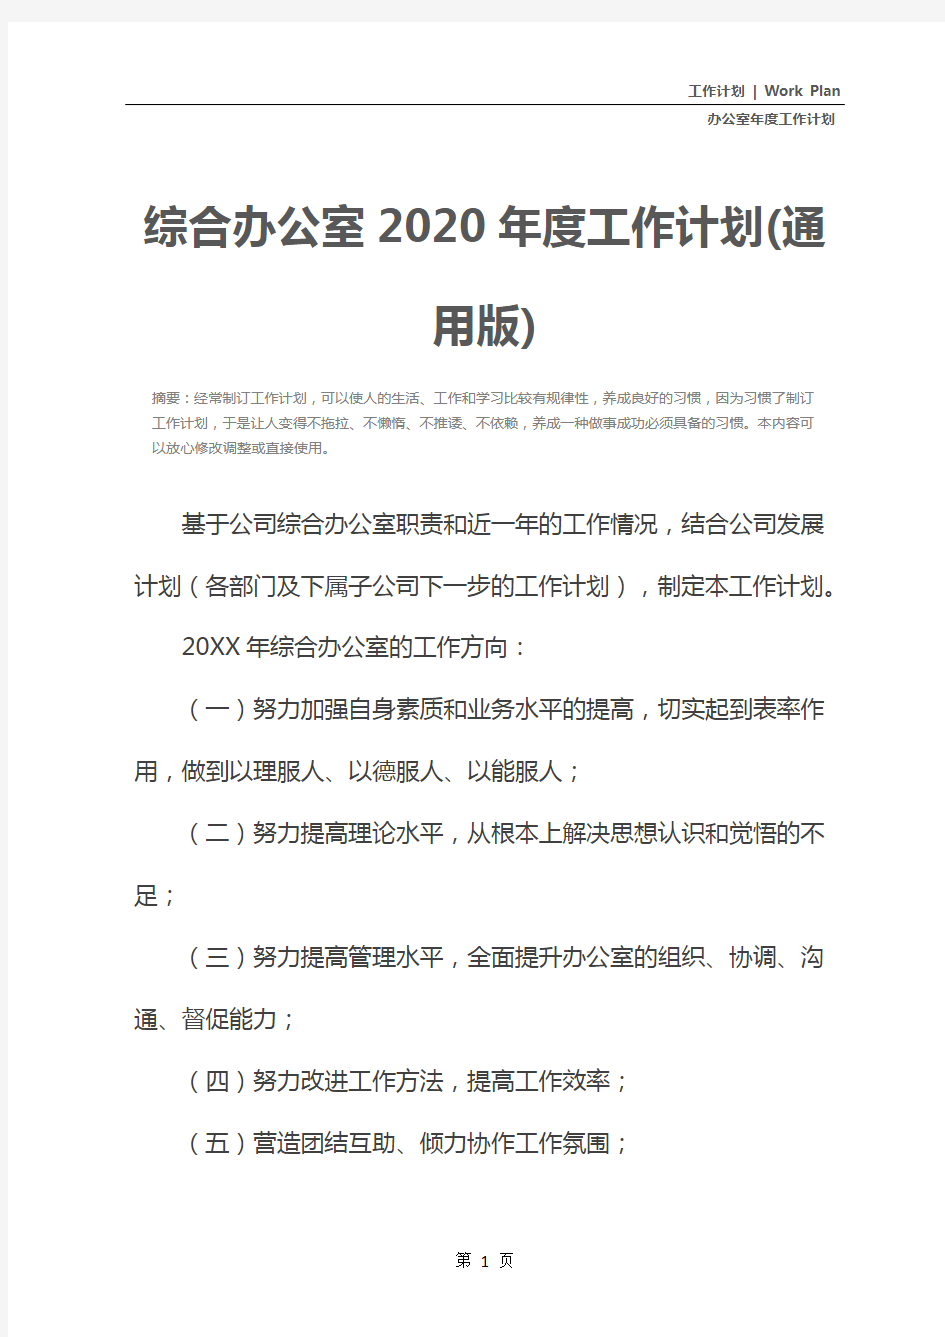 综合办公室2020年度工作计划(通用版)